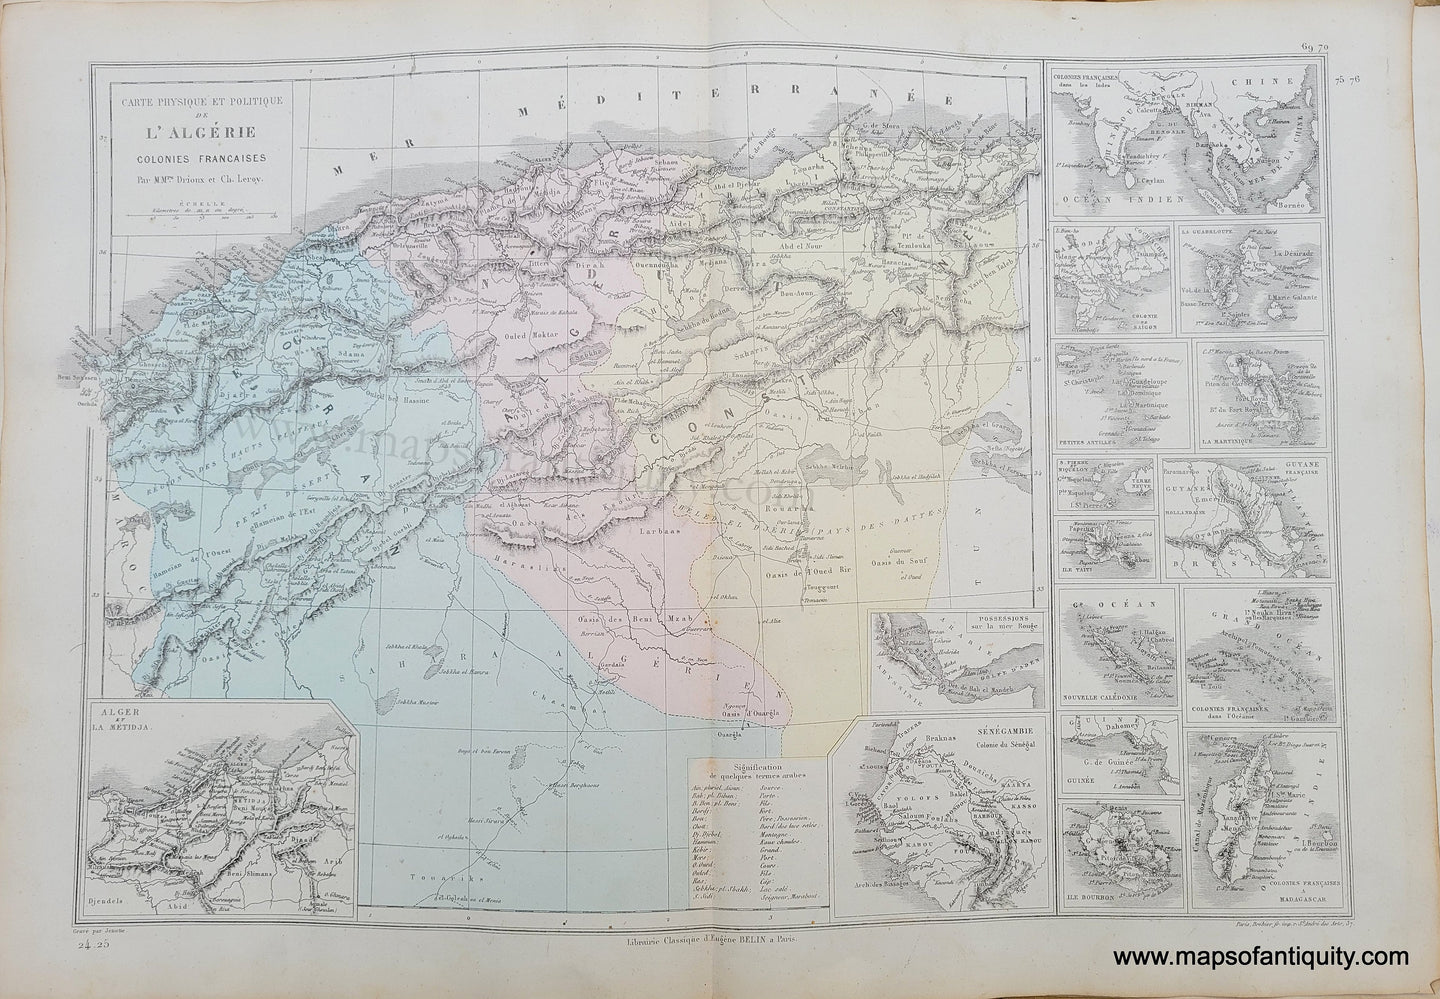 Genuine-Antique-Map-Carte-Physique-et-Politique-de-l'-Algerie,-Colonies-Francaises---Physical-and-Political-Map-of-Algeria-with-the-French-Colonies-1875-Drioux-&-Leroy-AFR279-Maps-Of-Antiquity